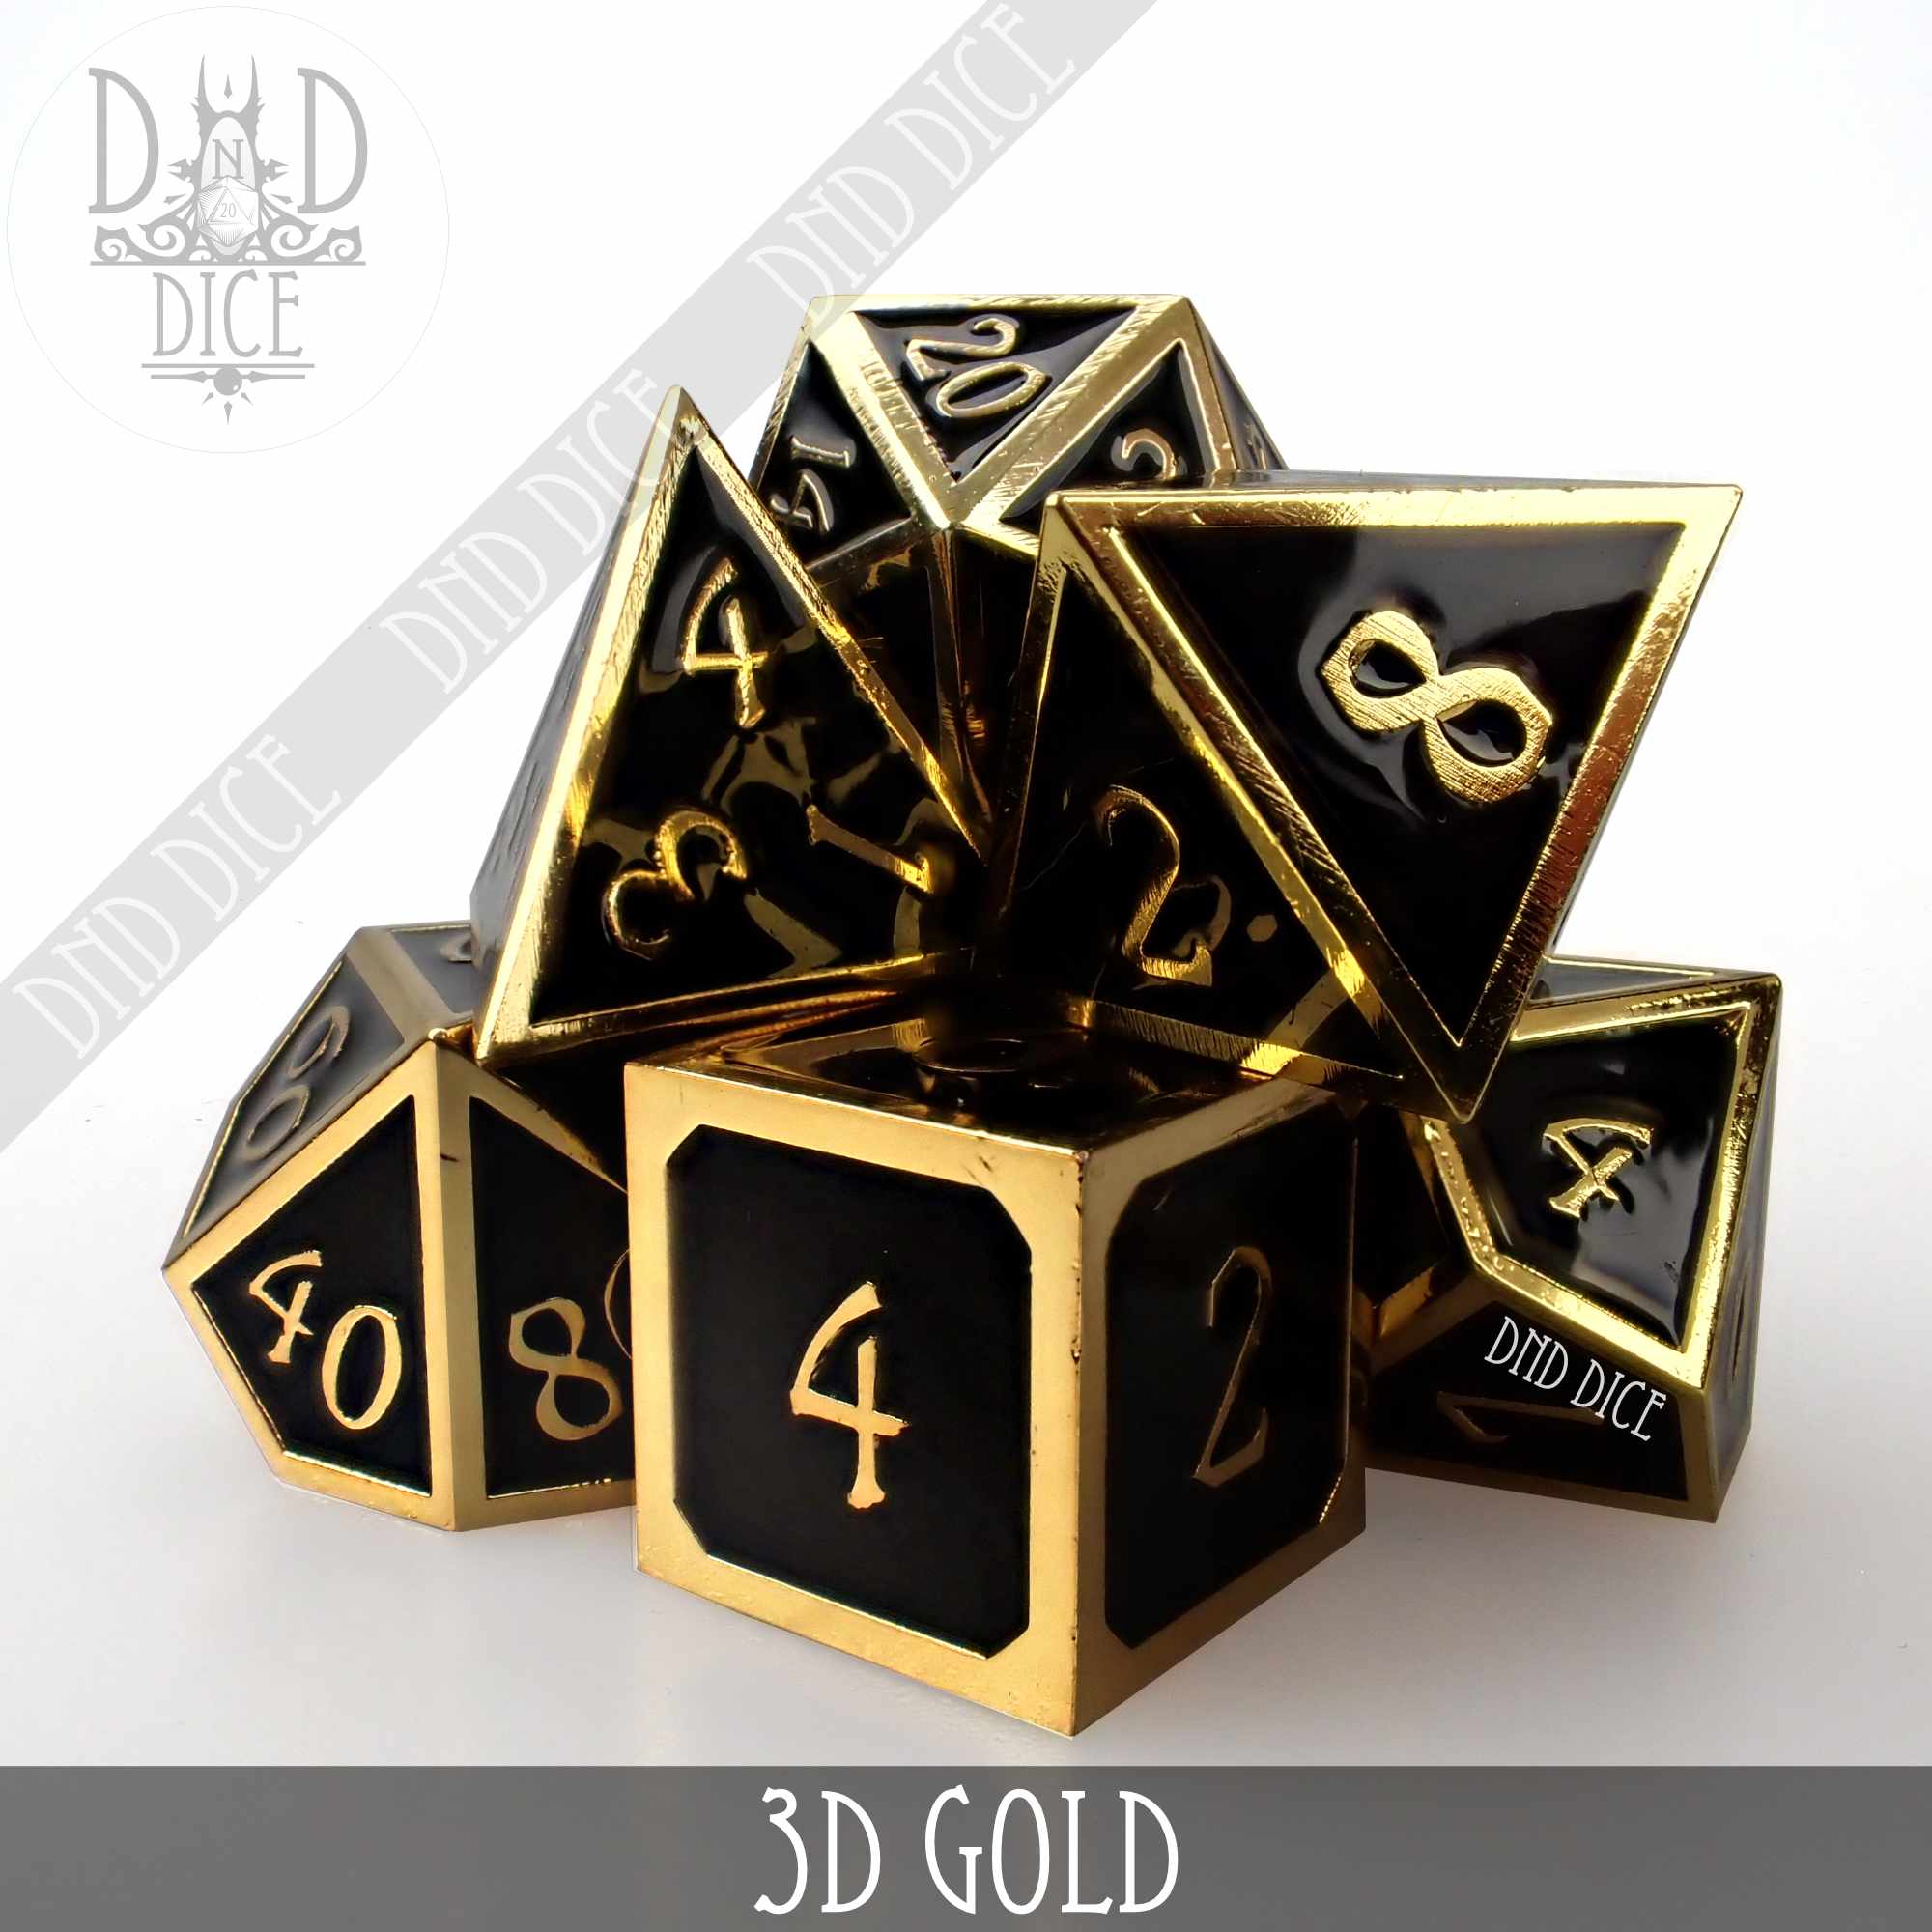 3D Gold Metal Dice Set